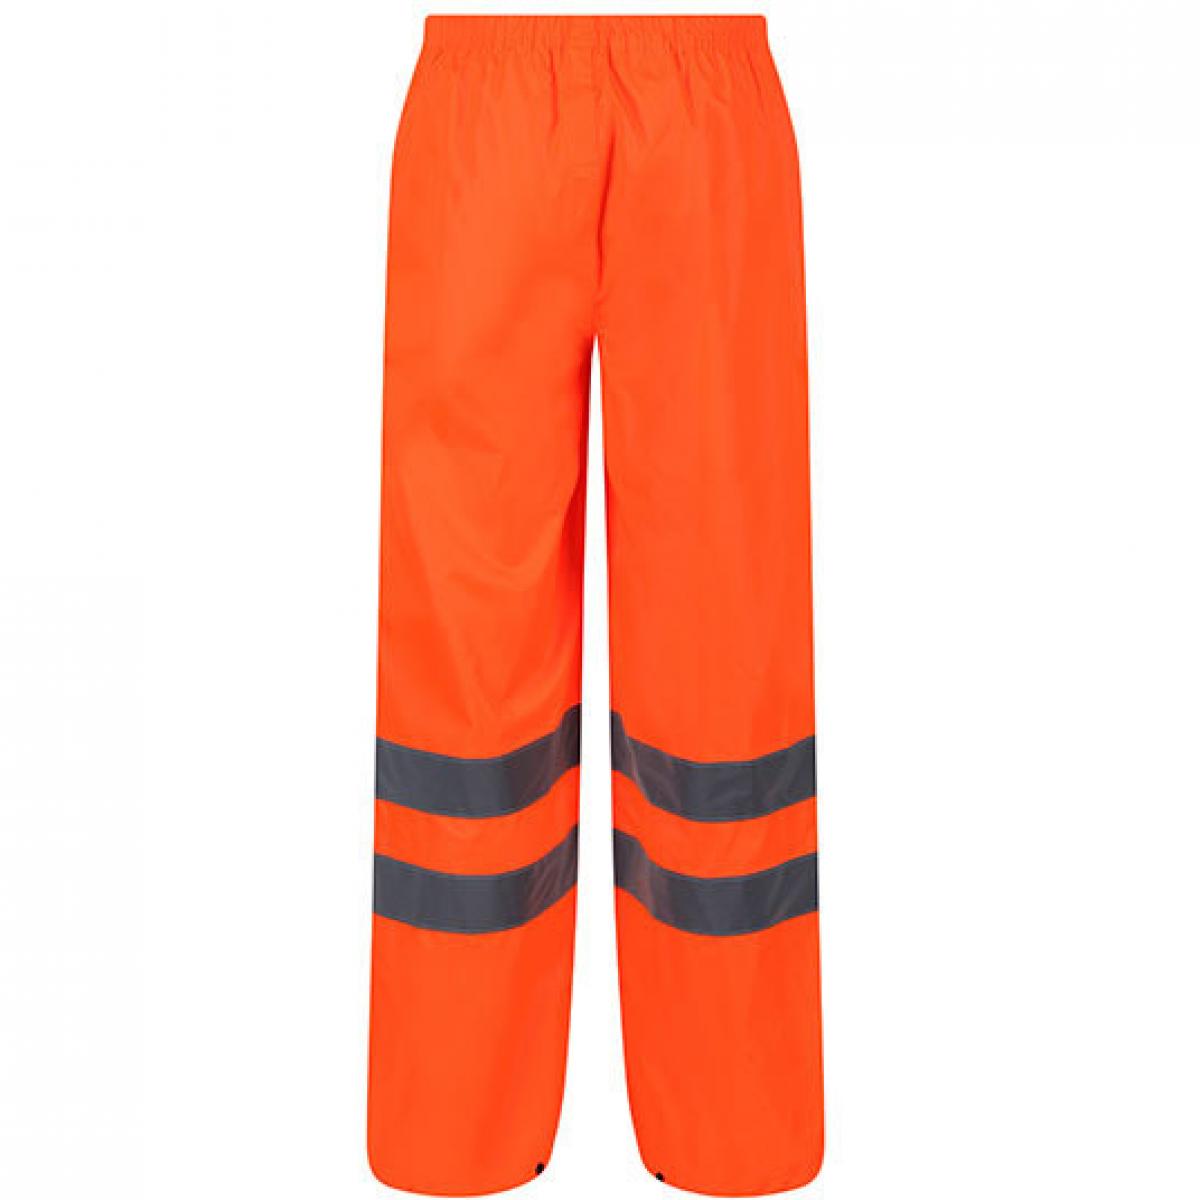 Hersteller: Regatta Herstellernummer: TRW498 Artikelbezeichnung: Herren Hi-Vis Pro Packaway Trousers Farbe: Orange